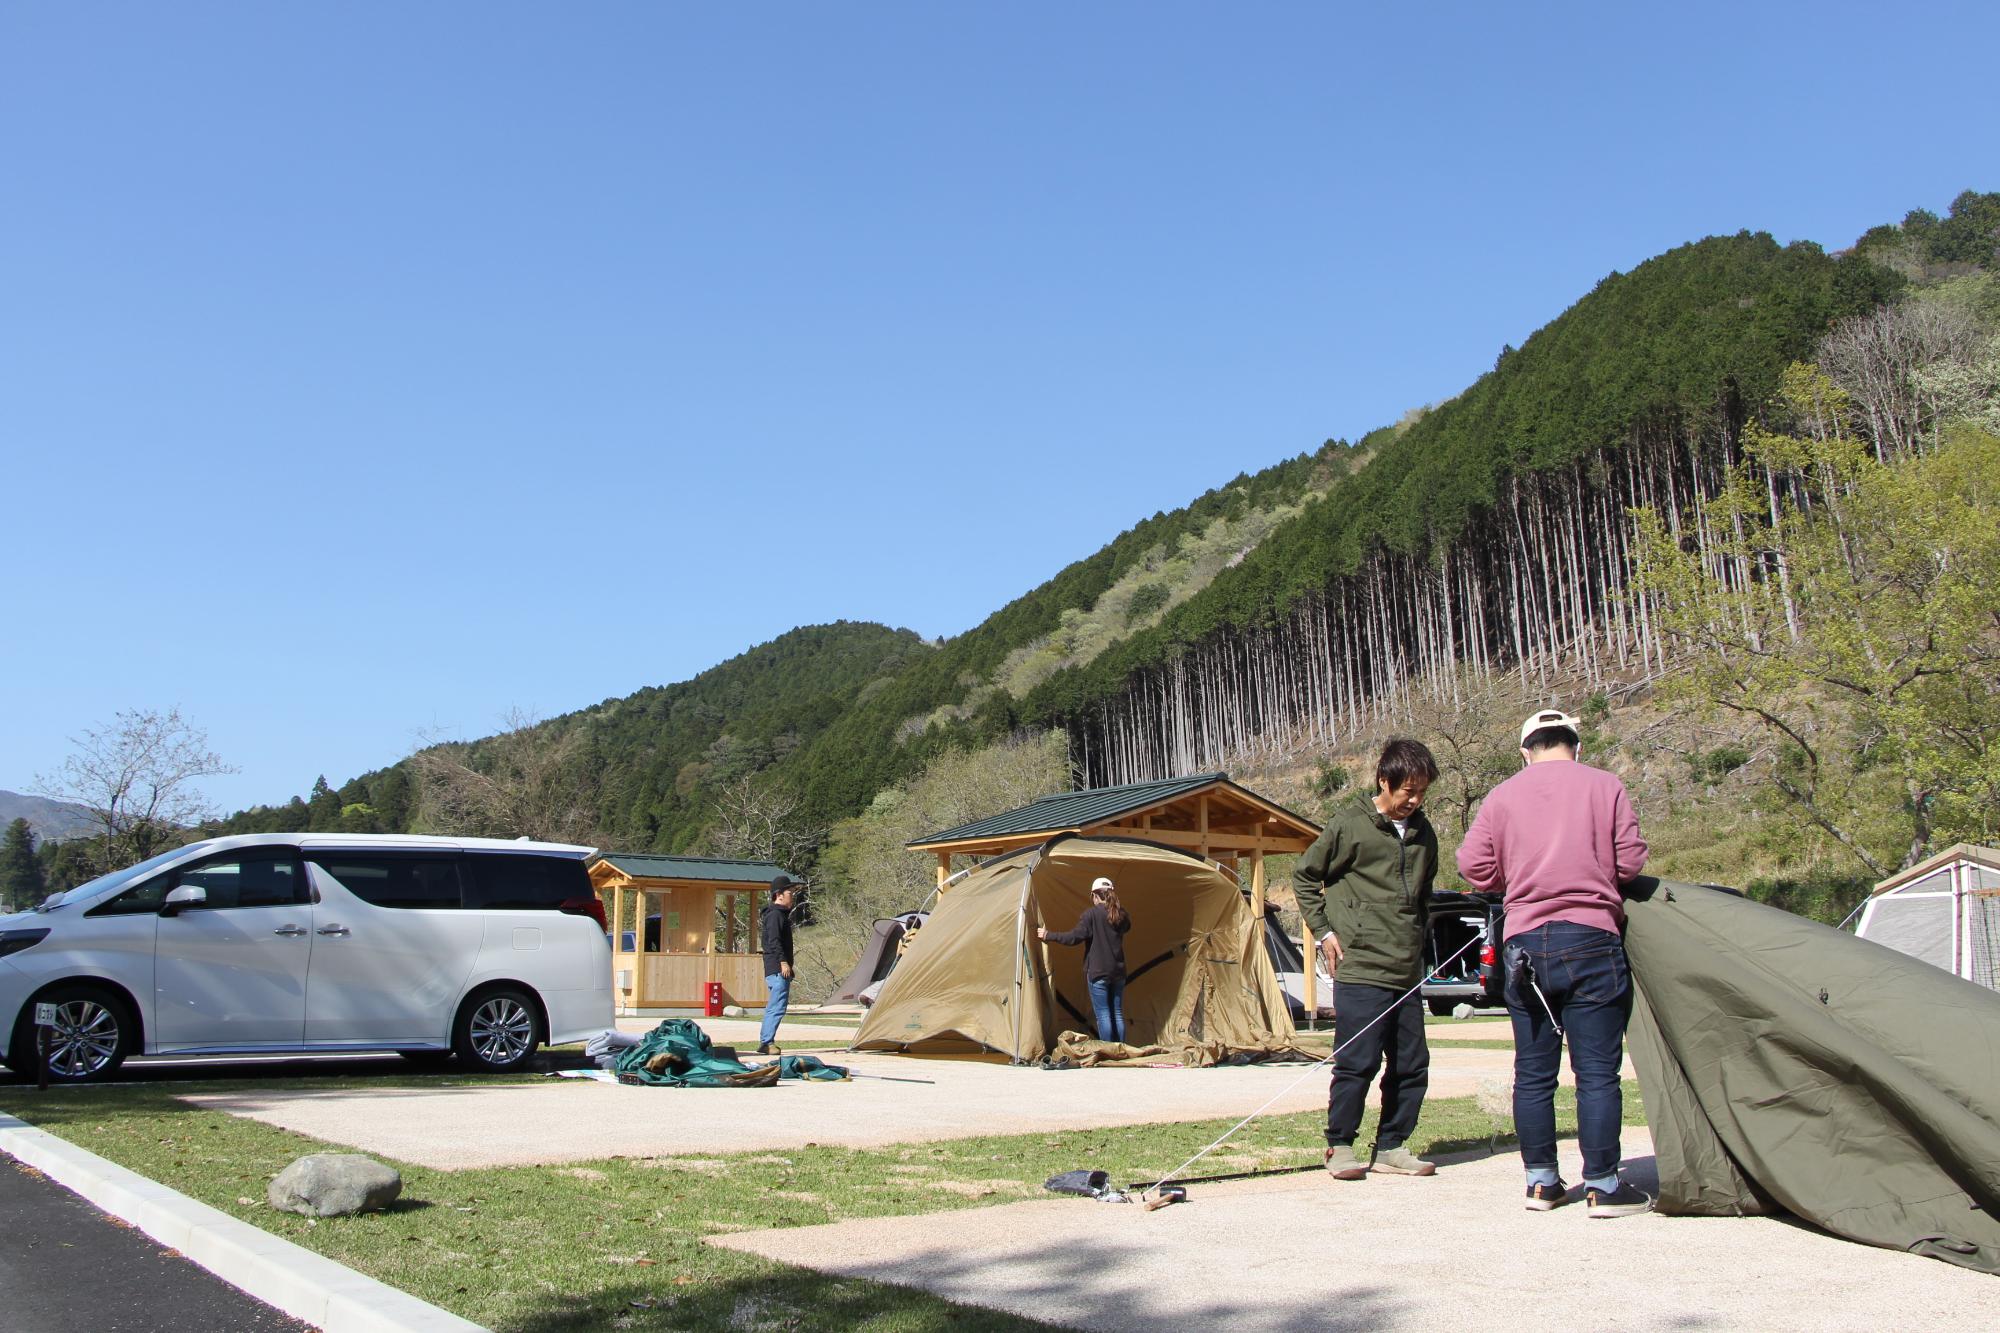 キャンプ場を利用する2人の男性がテントを広げて設営を始めている写真